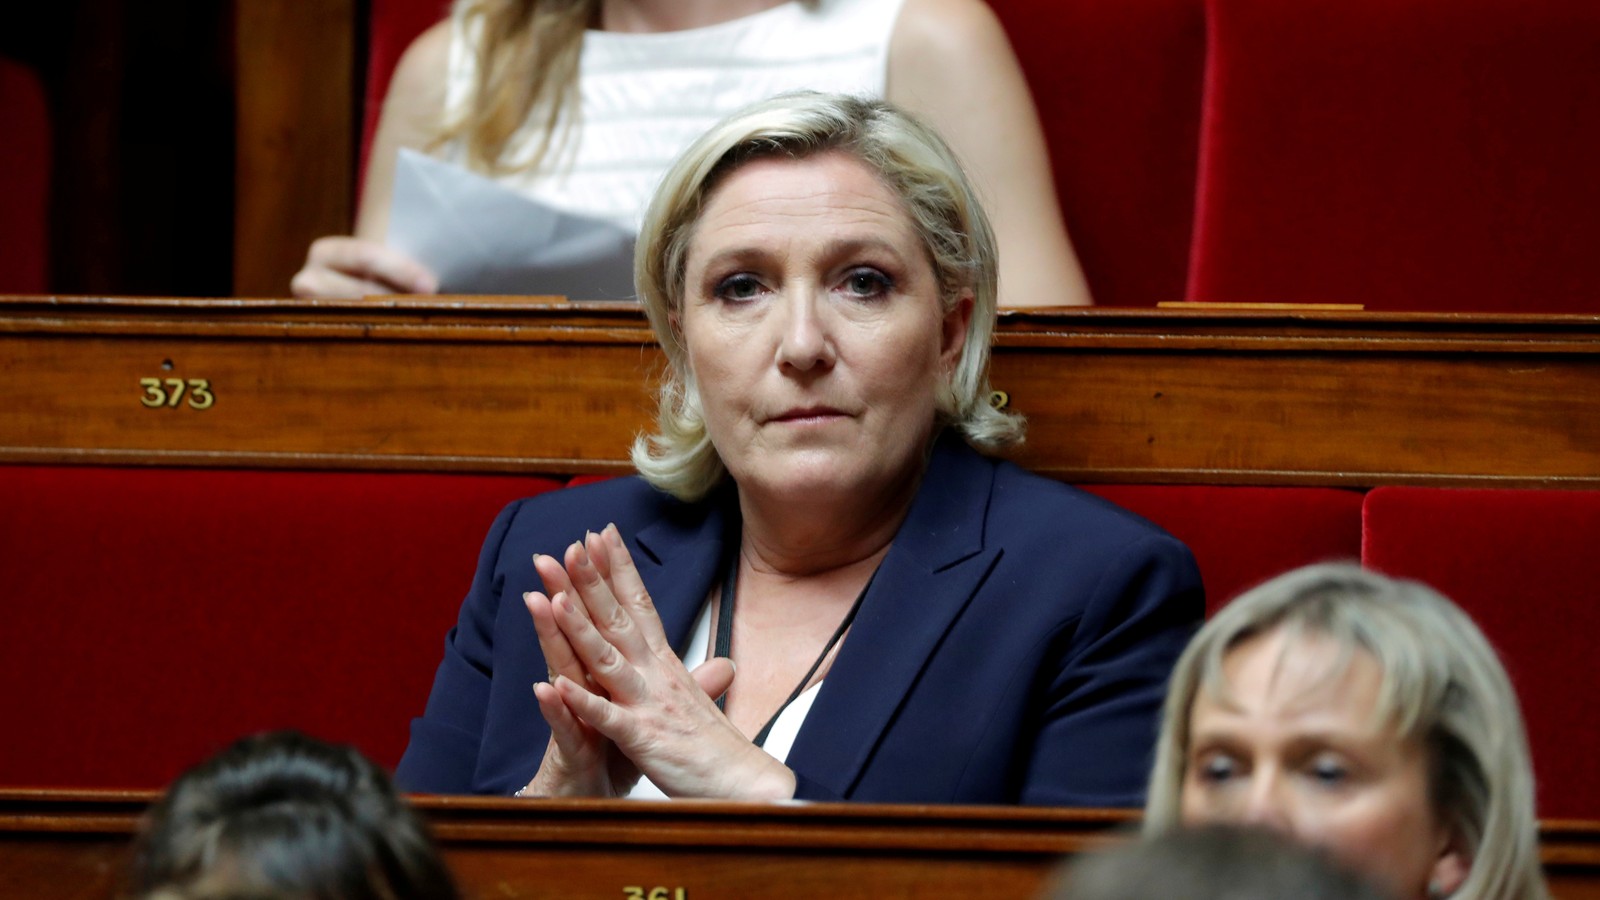 Le Pen – 26 Market